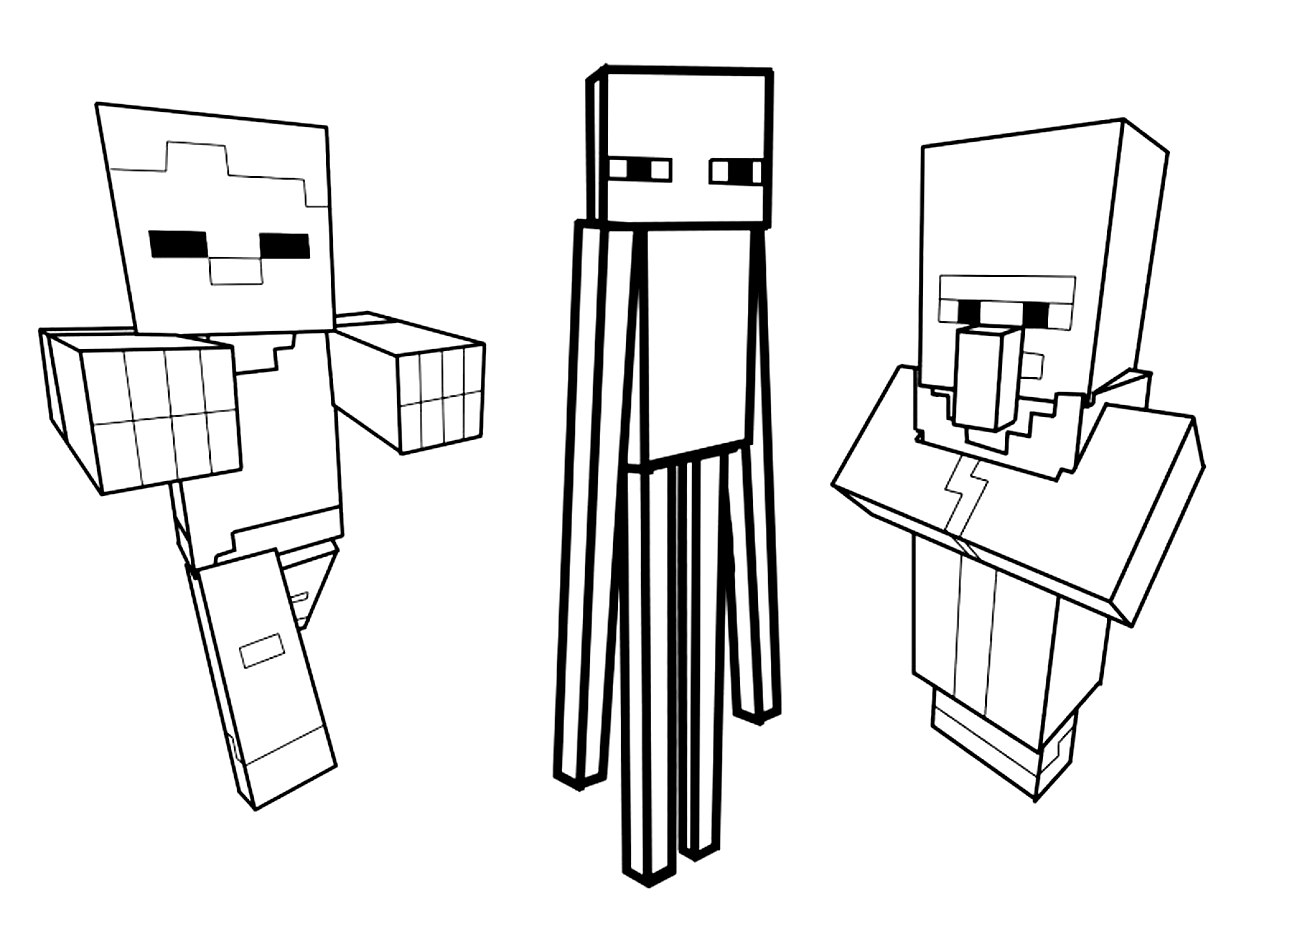 Dibujos para colorear gratis de Minecraft con 3 personajes